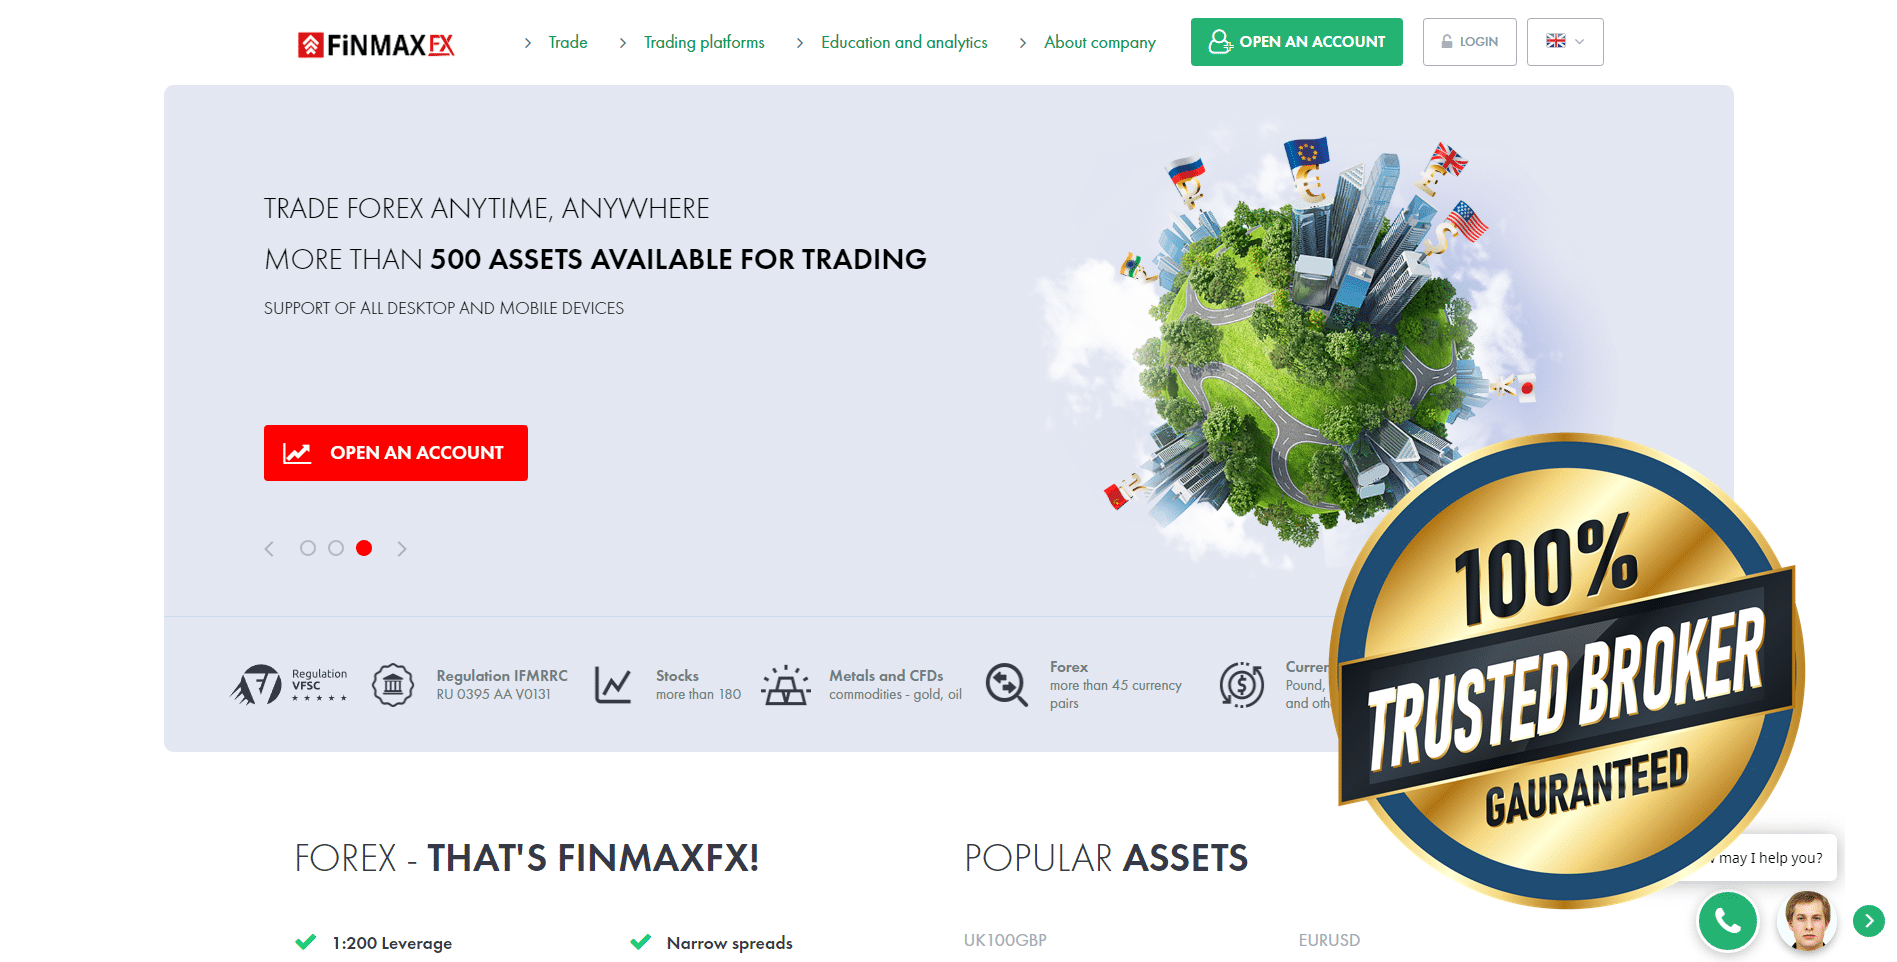 trang web finmaxfx (finmaxfx)